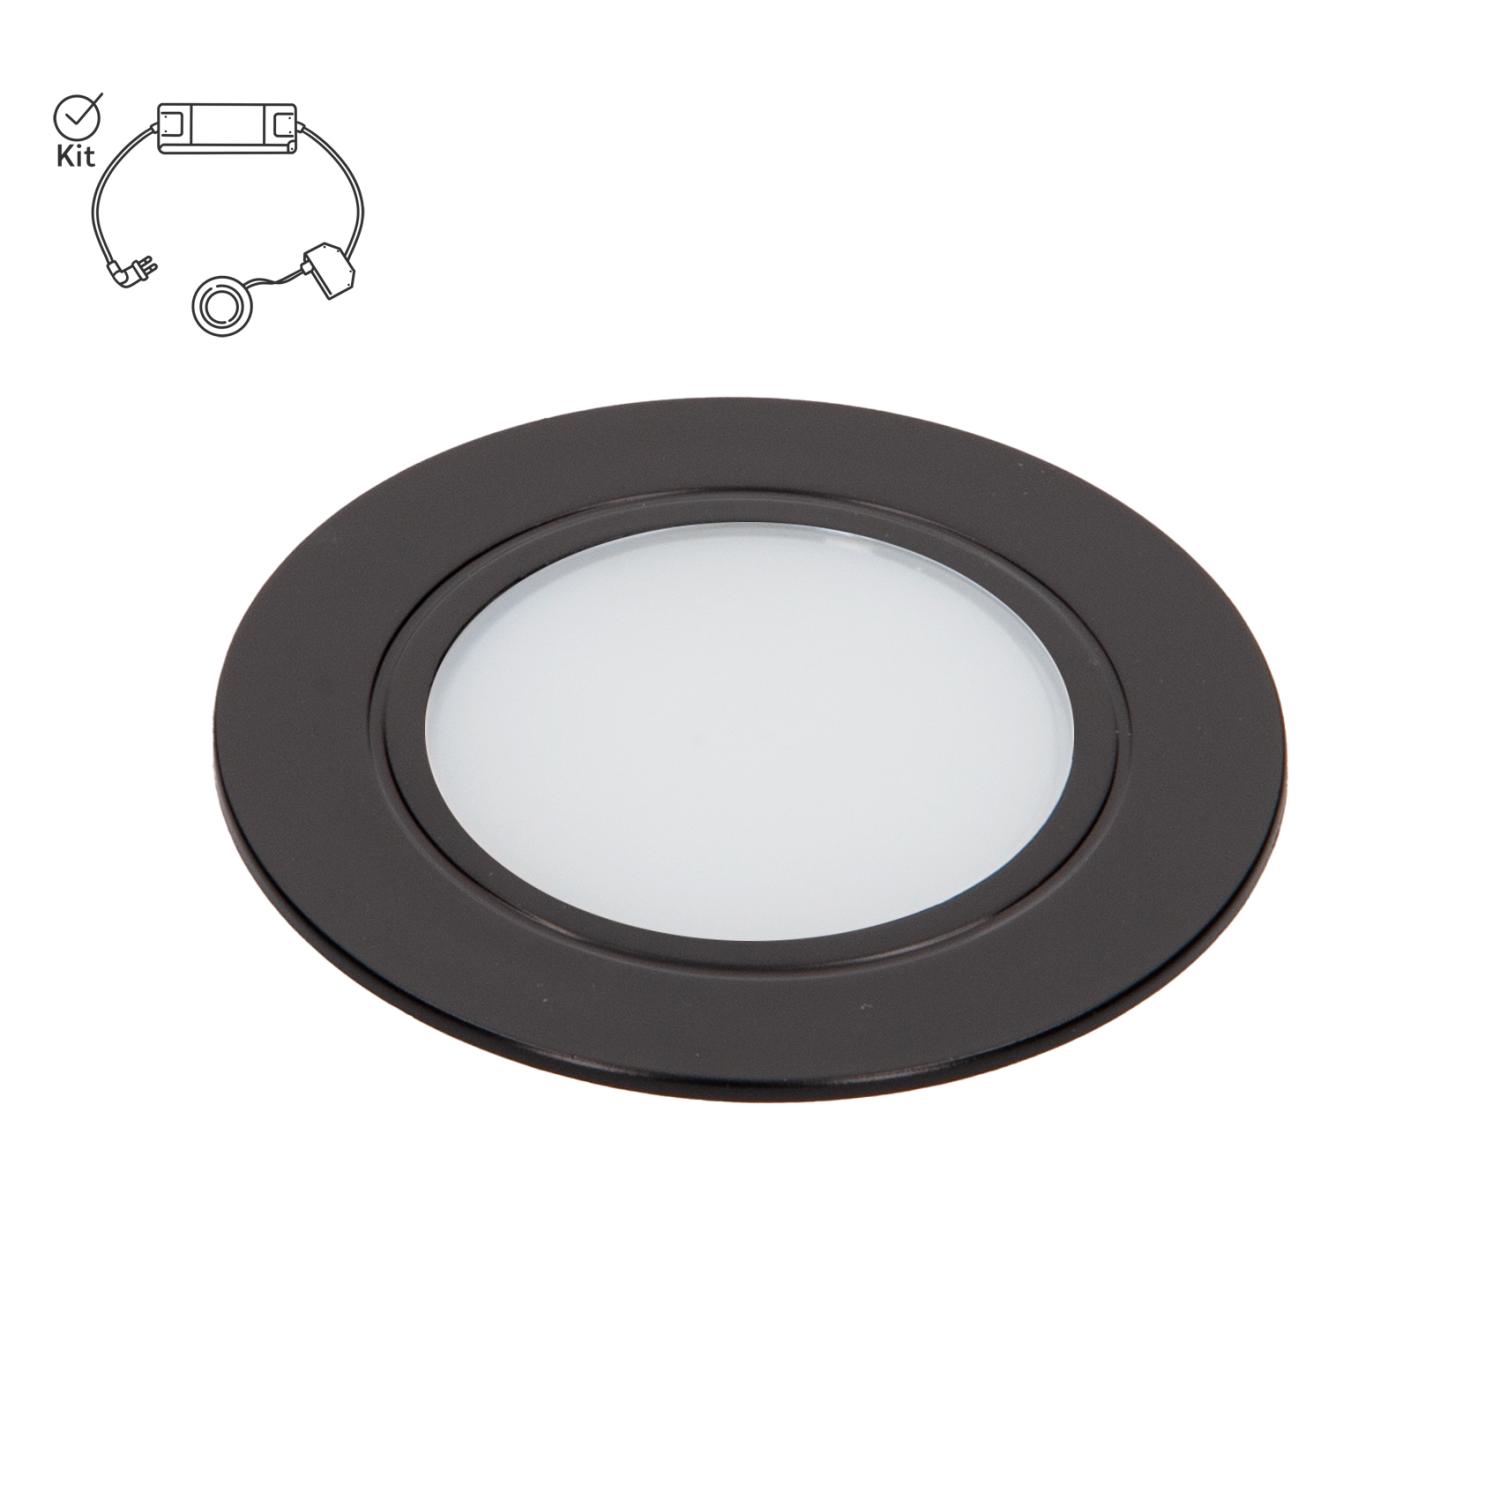 LED dimbar spotlight i svart finish med symbol som visar att produkten köps komplett i ett kit med drivdon.